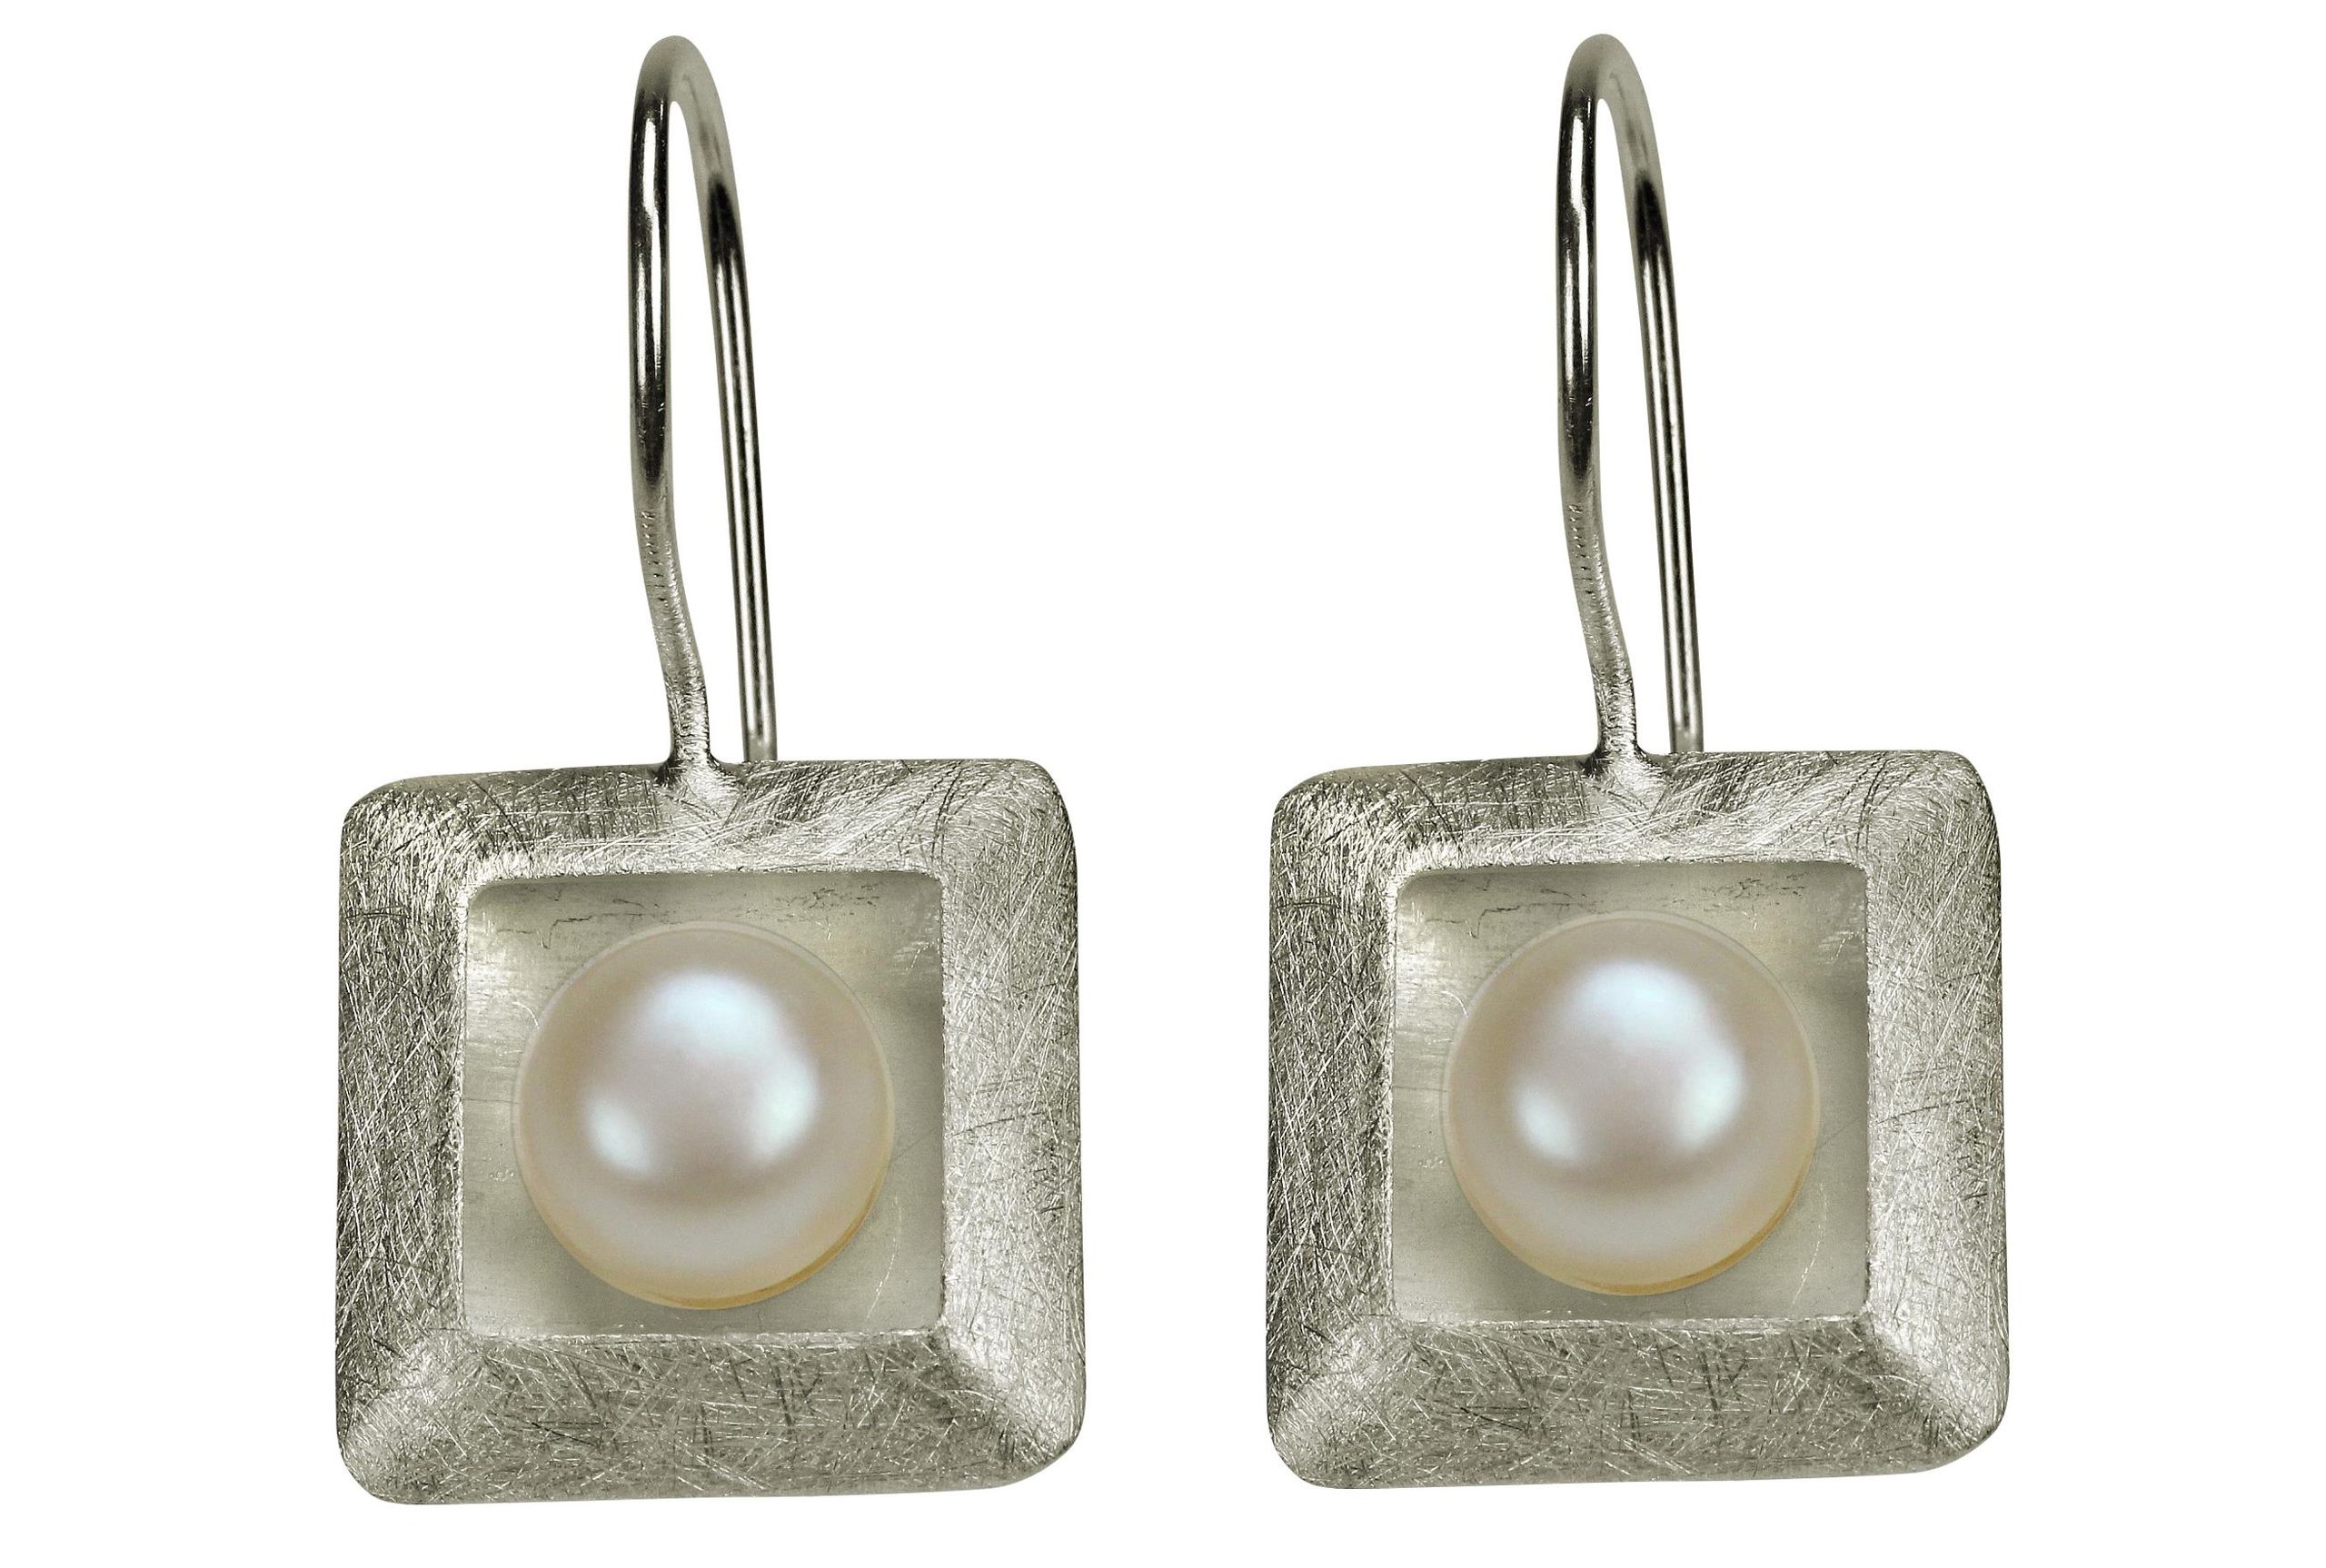 Ohrhänger aus Silber für Damen mit einem quadratischen Zierelement, in denen mittig jeweils eine Perle sitzt.